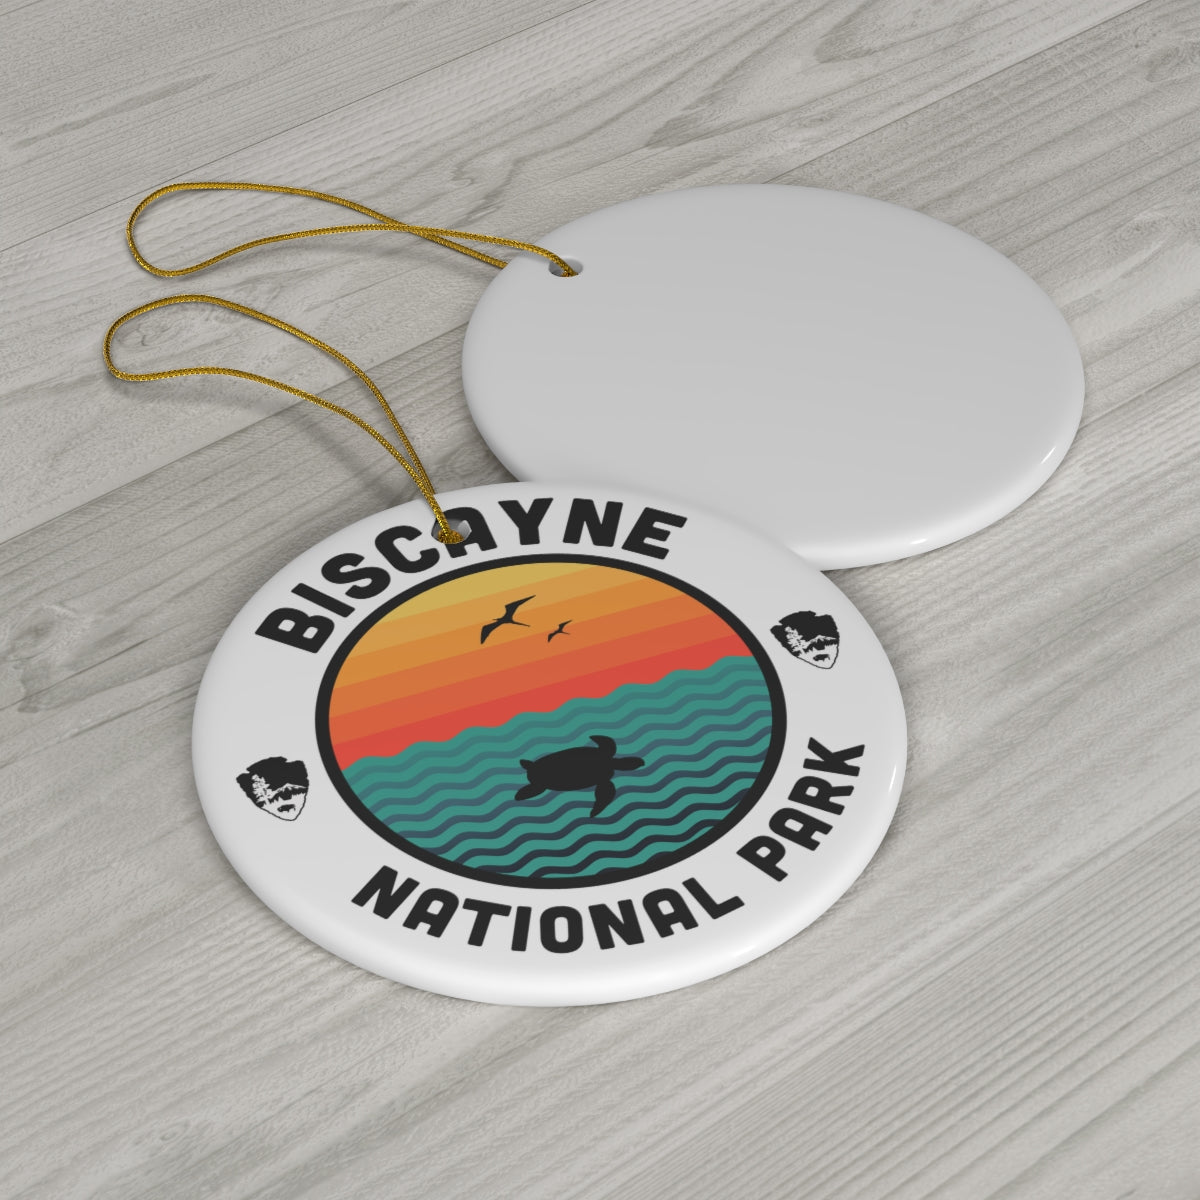 Biscayne National Park Ornament - Round Emblem Design